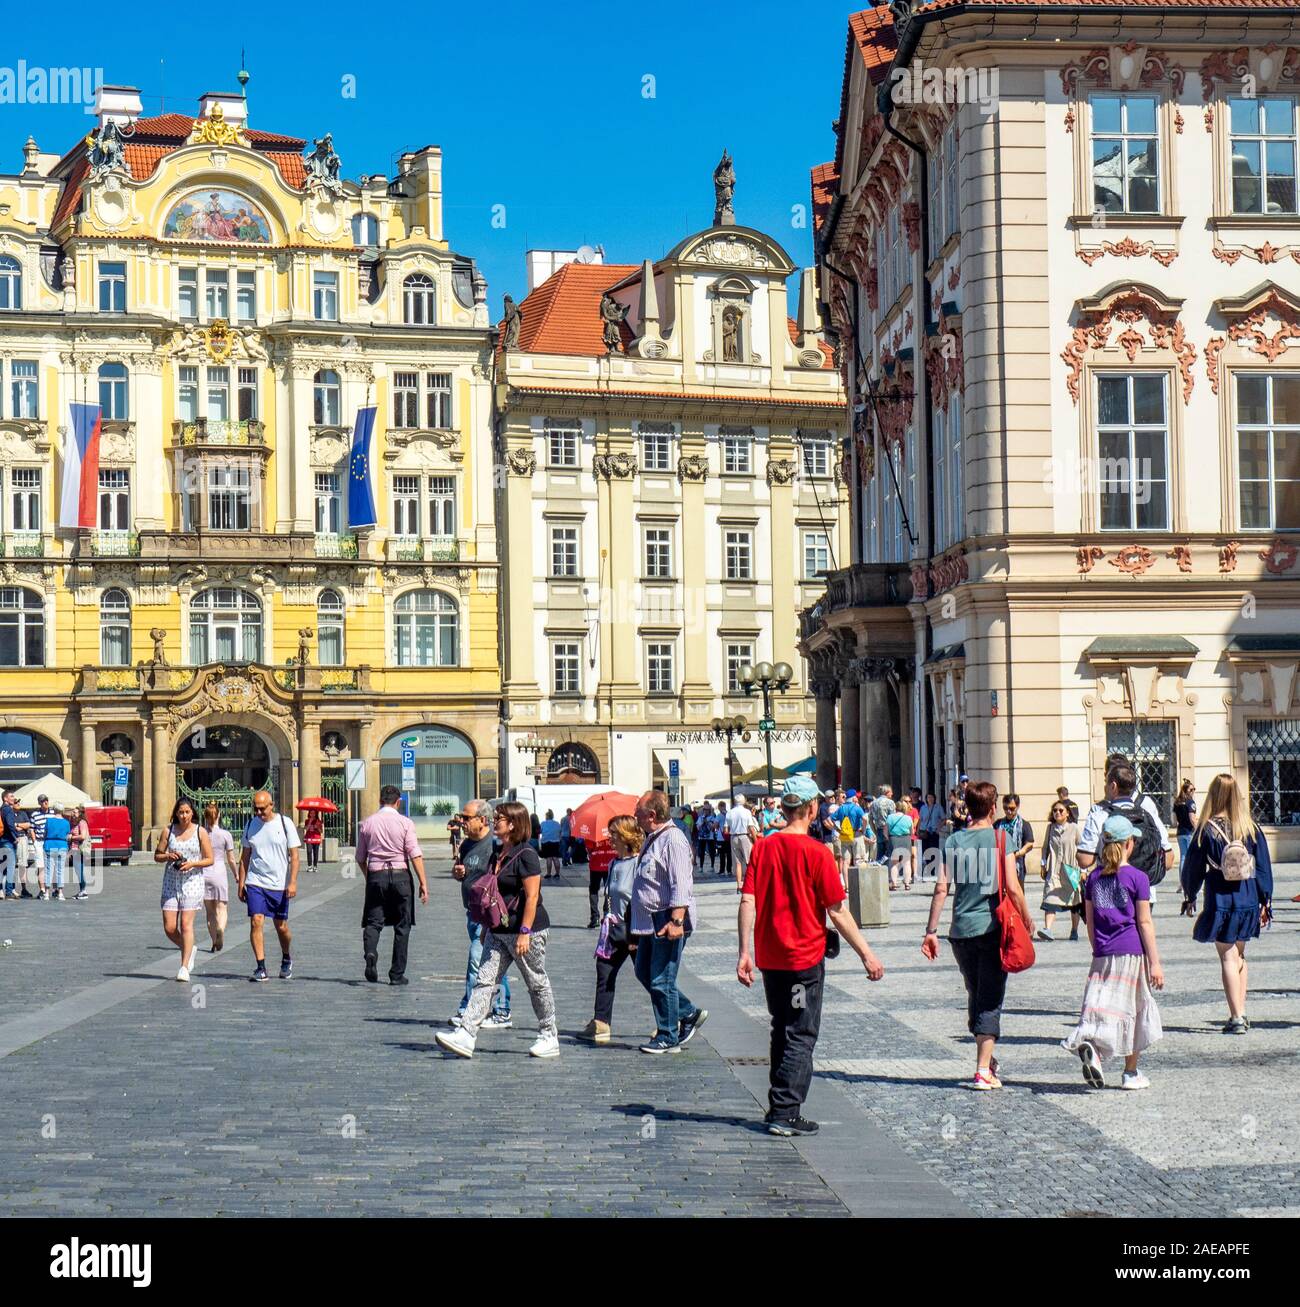 Façade de l'ancienne compagnie d'assurance de la ville de Prague maintenant Ministère du développement régional à la place de la vieille ville Staré Město Prague Praha République Tchèque. Banque D'Images